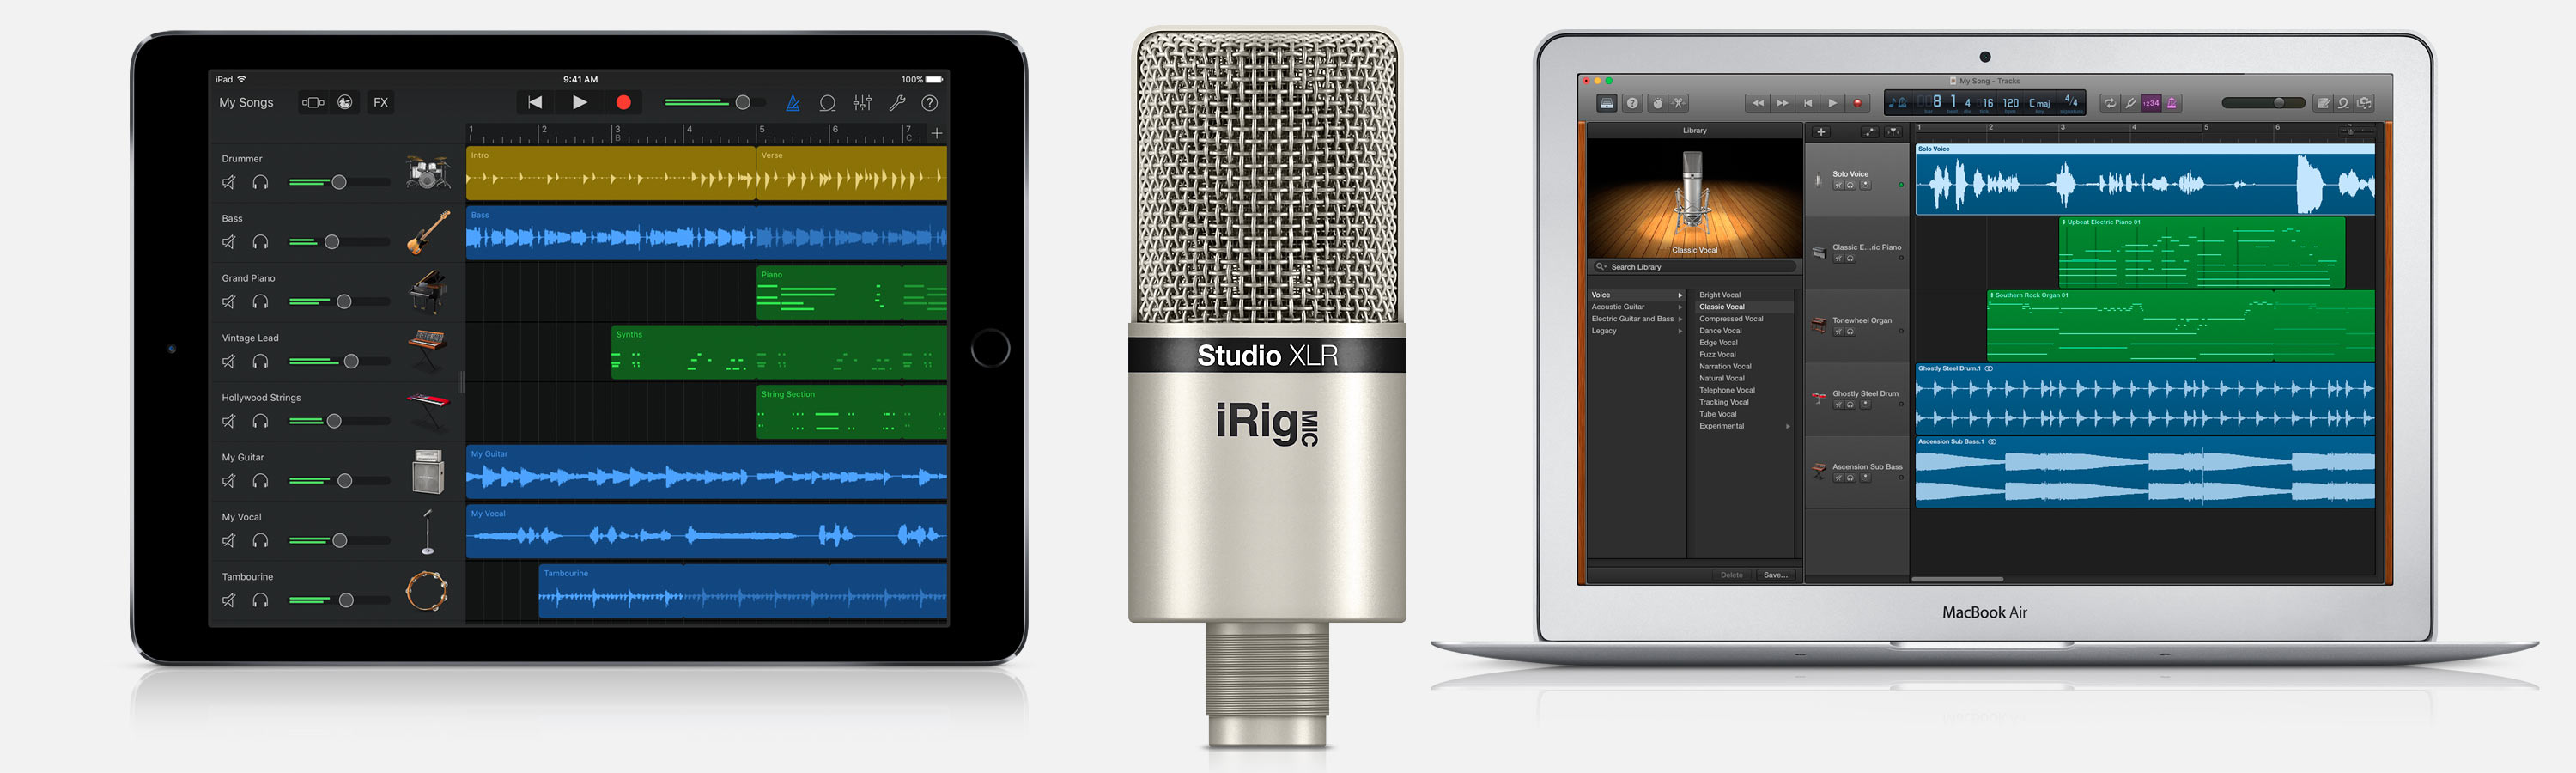 iRig Mic Studio XLR iPad Mac